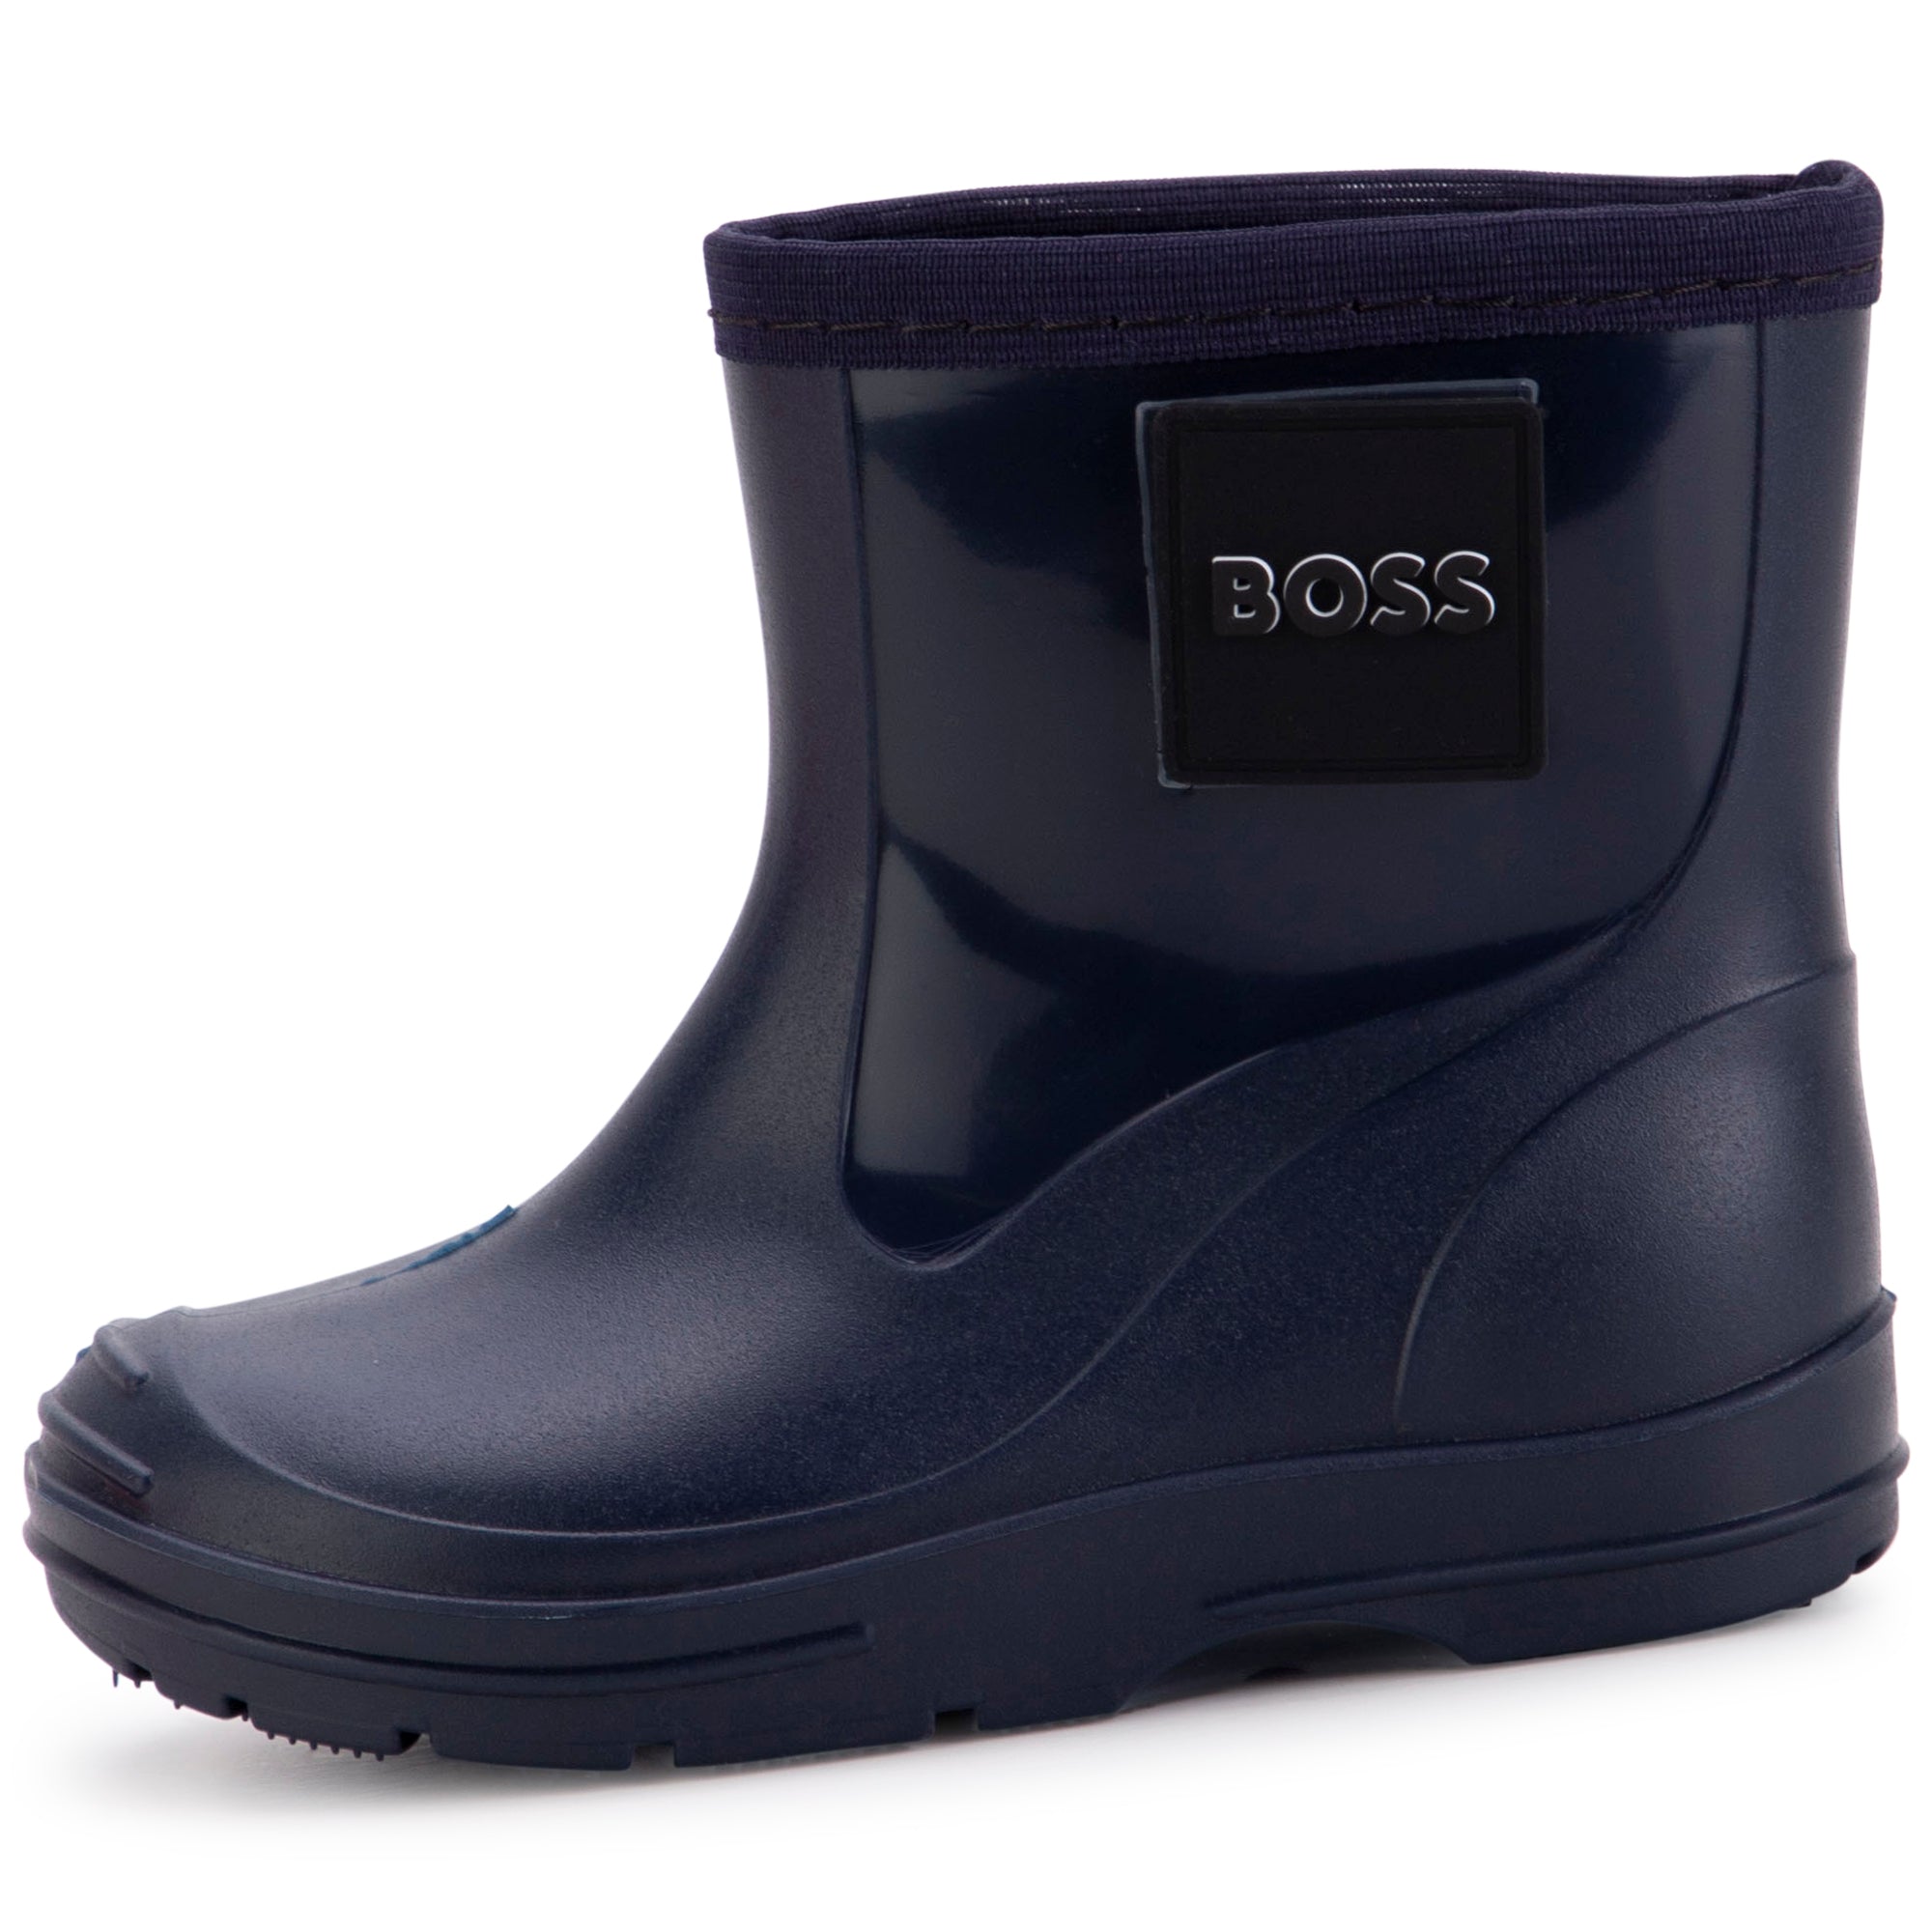 Hugo Boss Navy Rain Boot